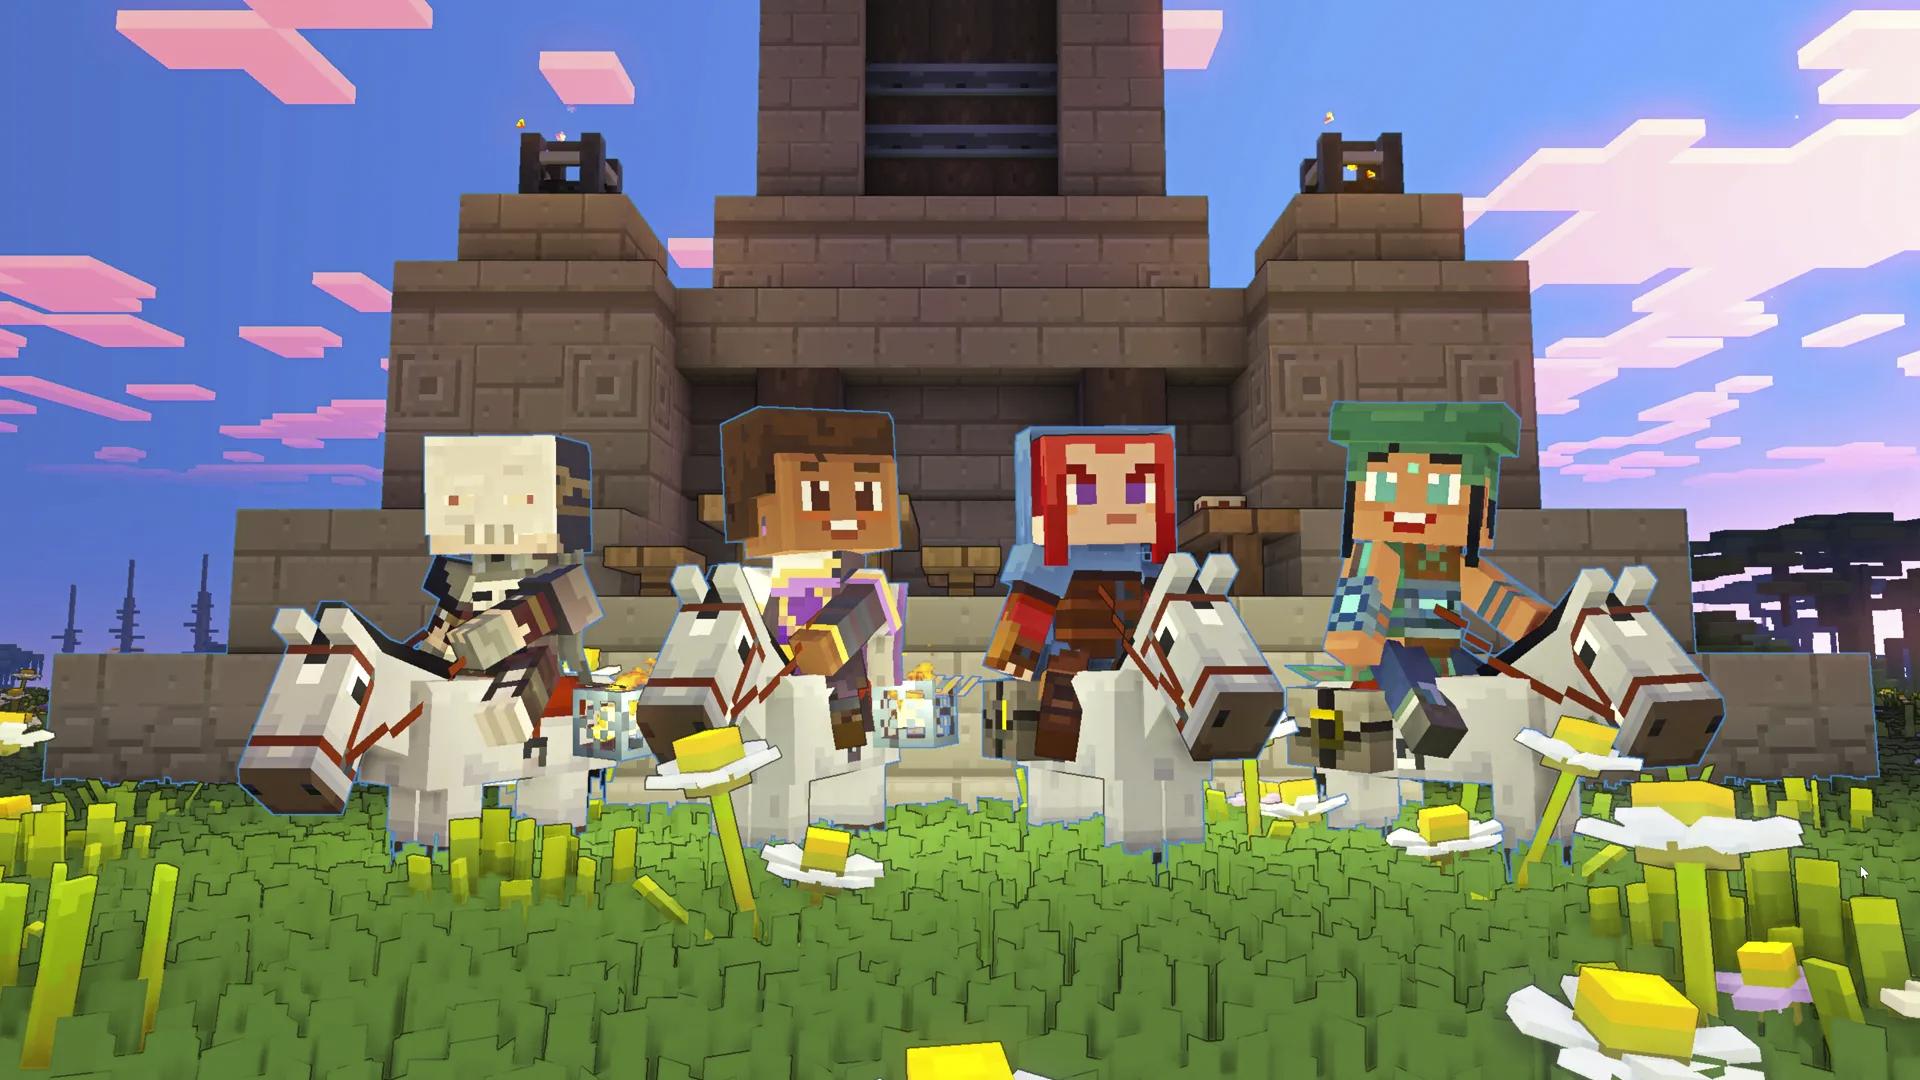 Download Minecraft Legends Blocks Mod for Minecraft PE - Minecraft